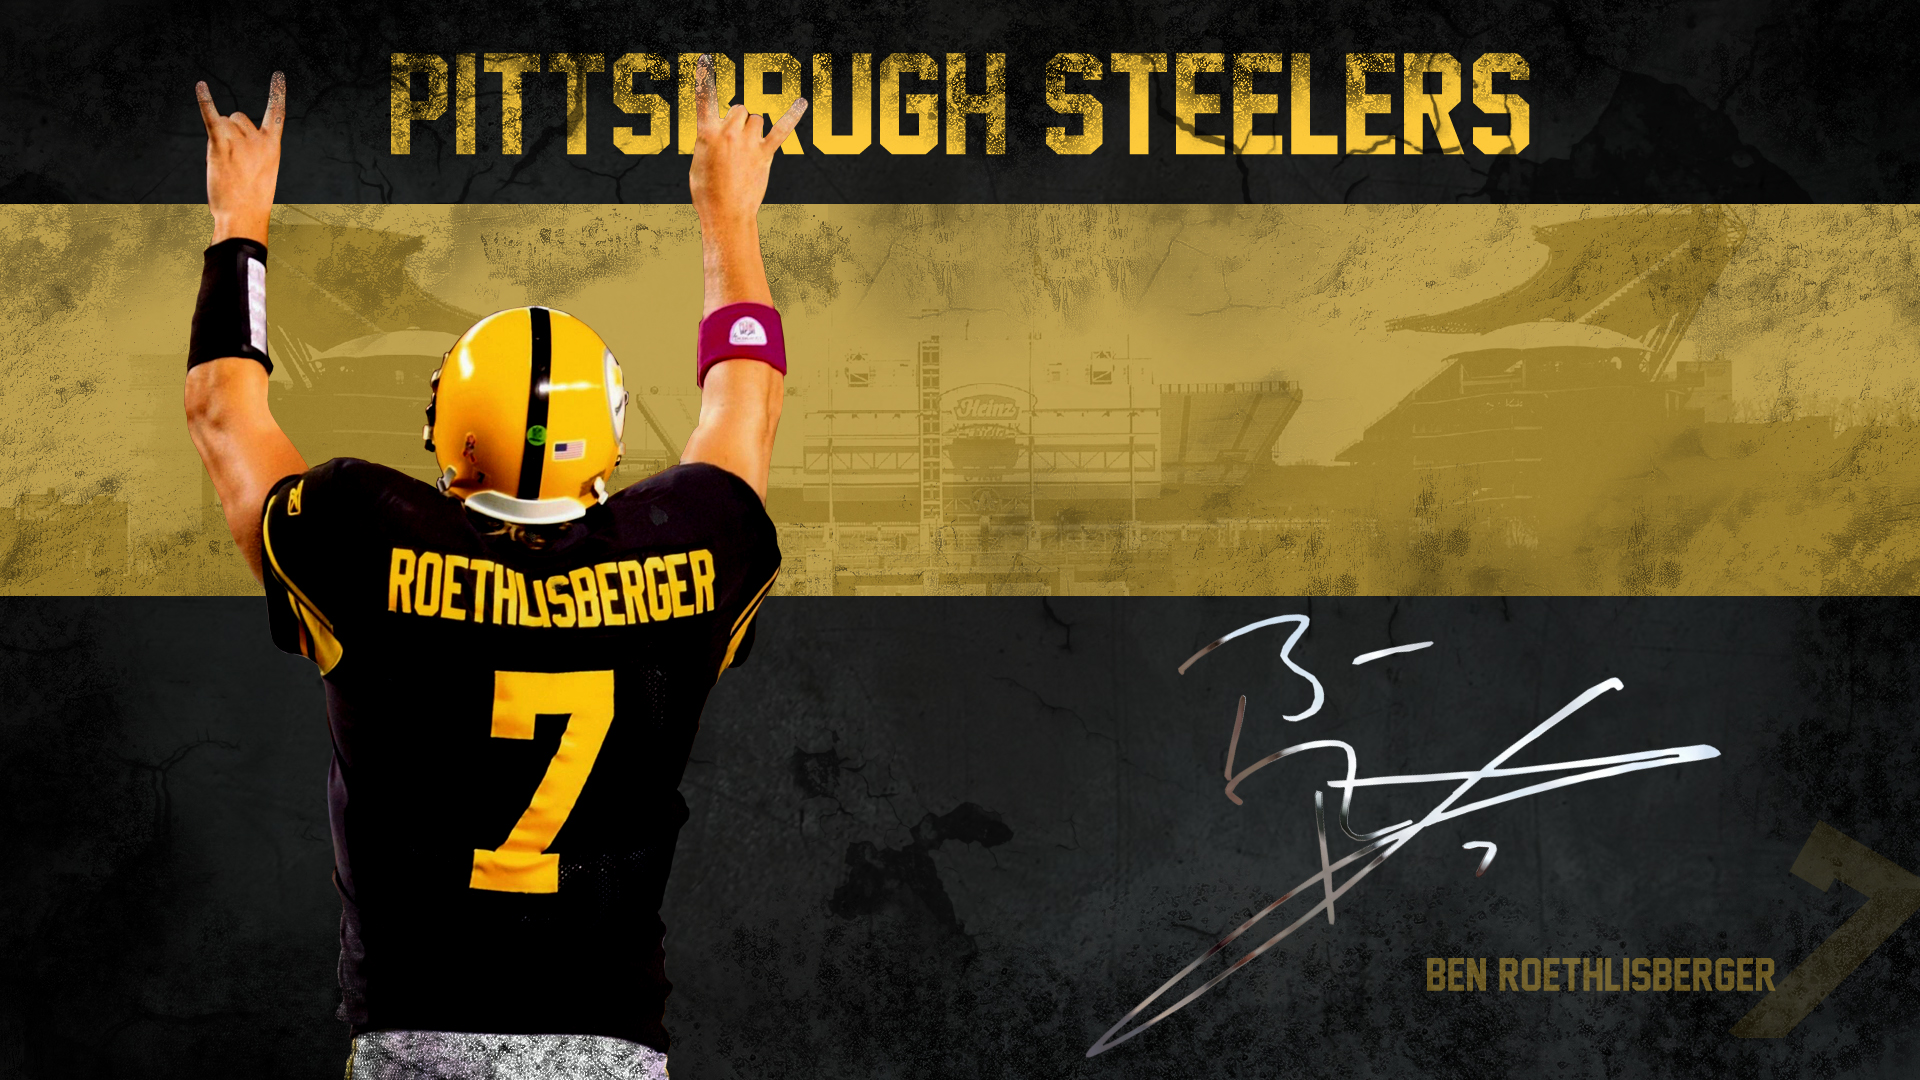  Steelers HD desktop wallpaper Pittsburgh Steelers wallpapers